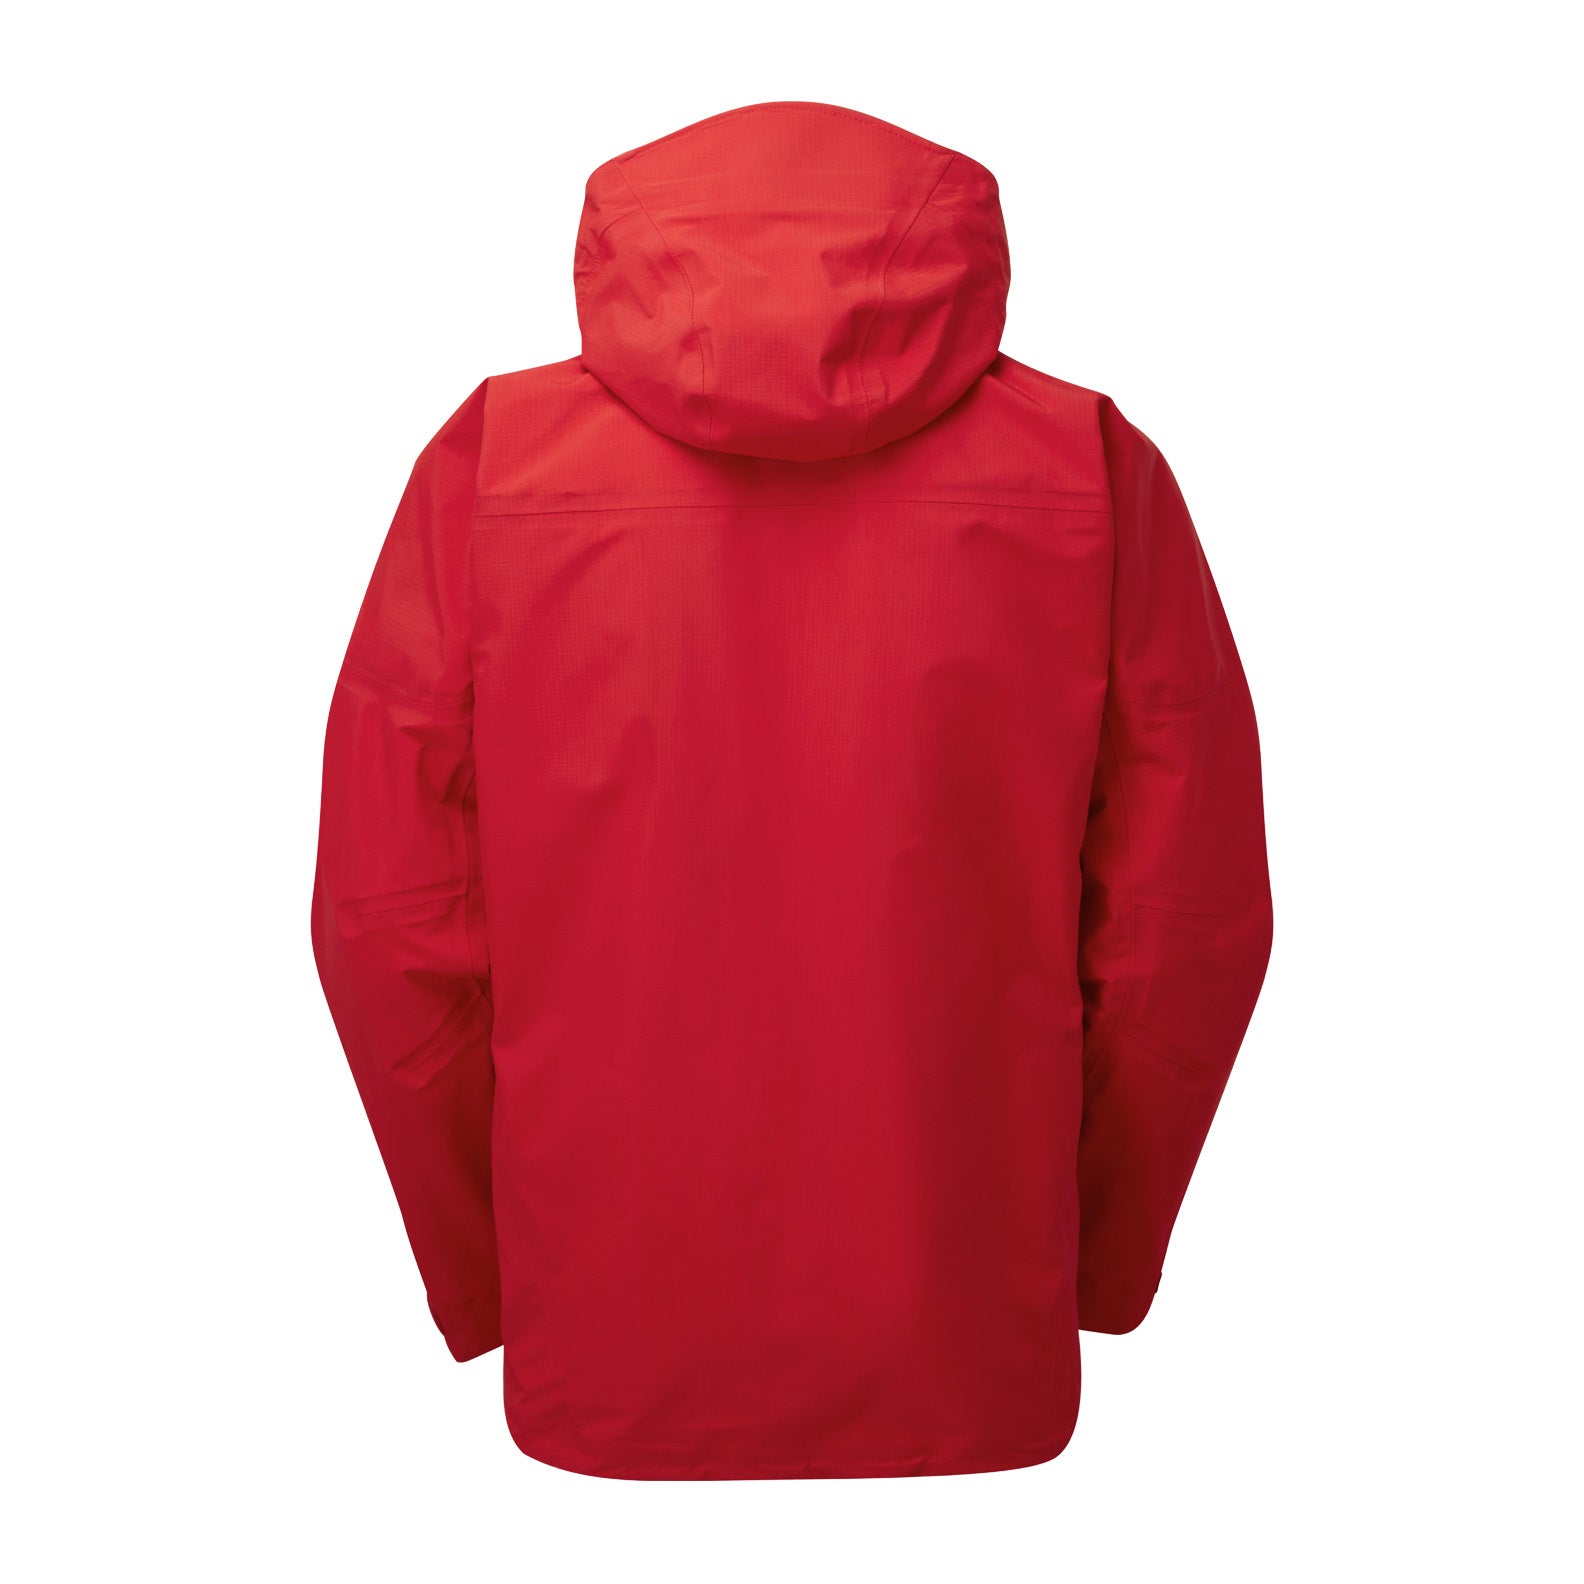 Keela Pinnacle Jacket | New Forest Clothing